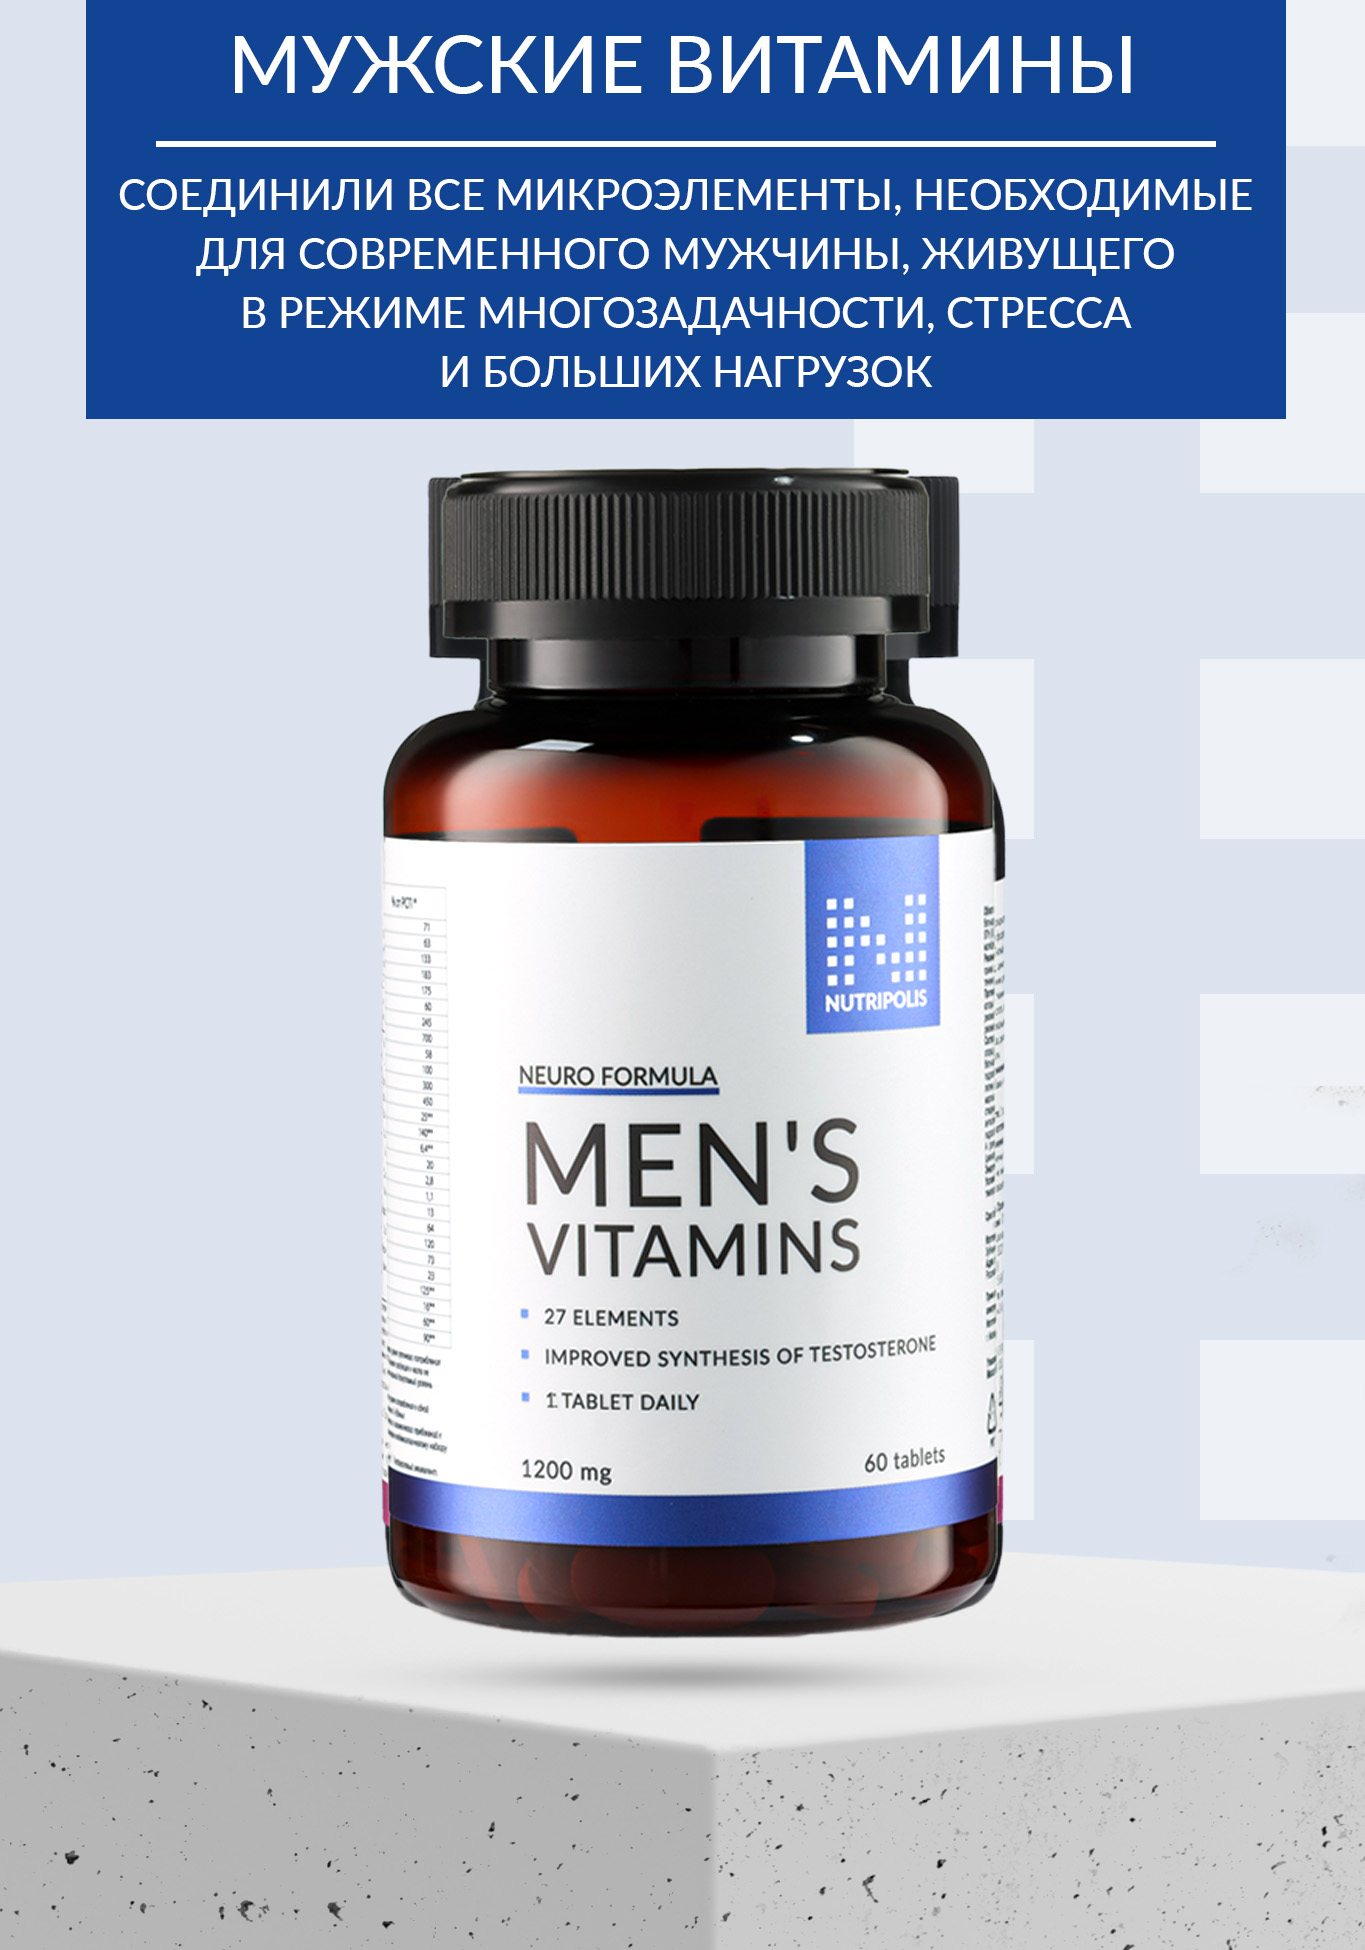 Men vitamin`s (Витамины для мужчин) NUTRIPOLIS - фото 3